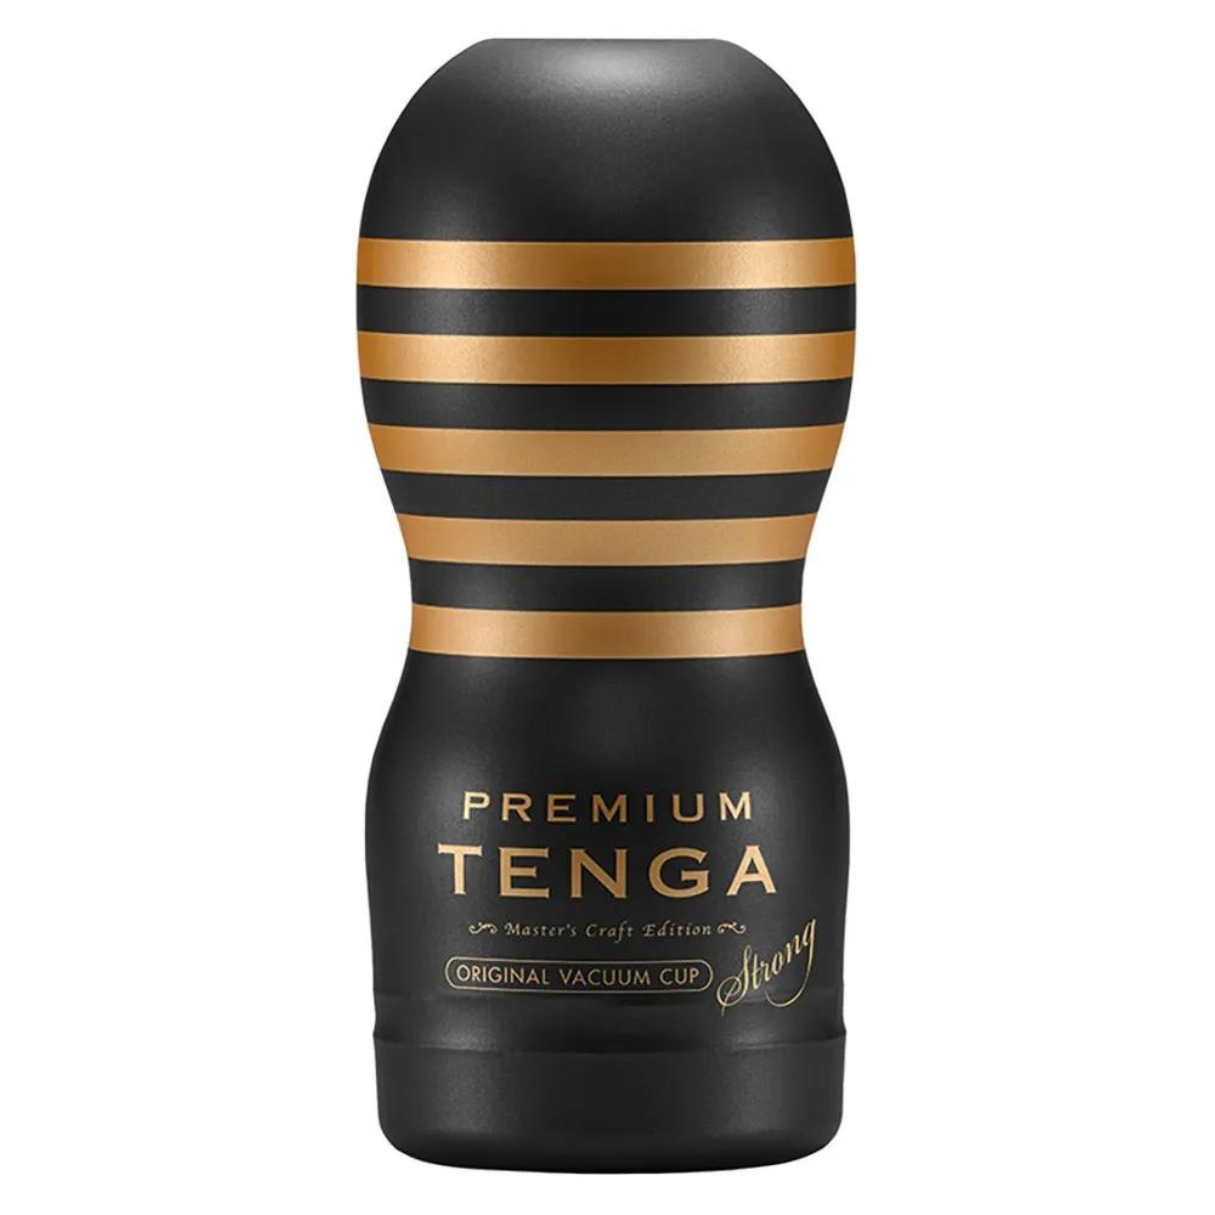 TENGA Premium Original Vacuum Cup Vibrator